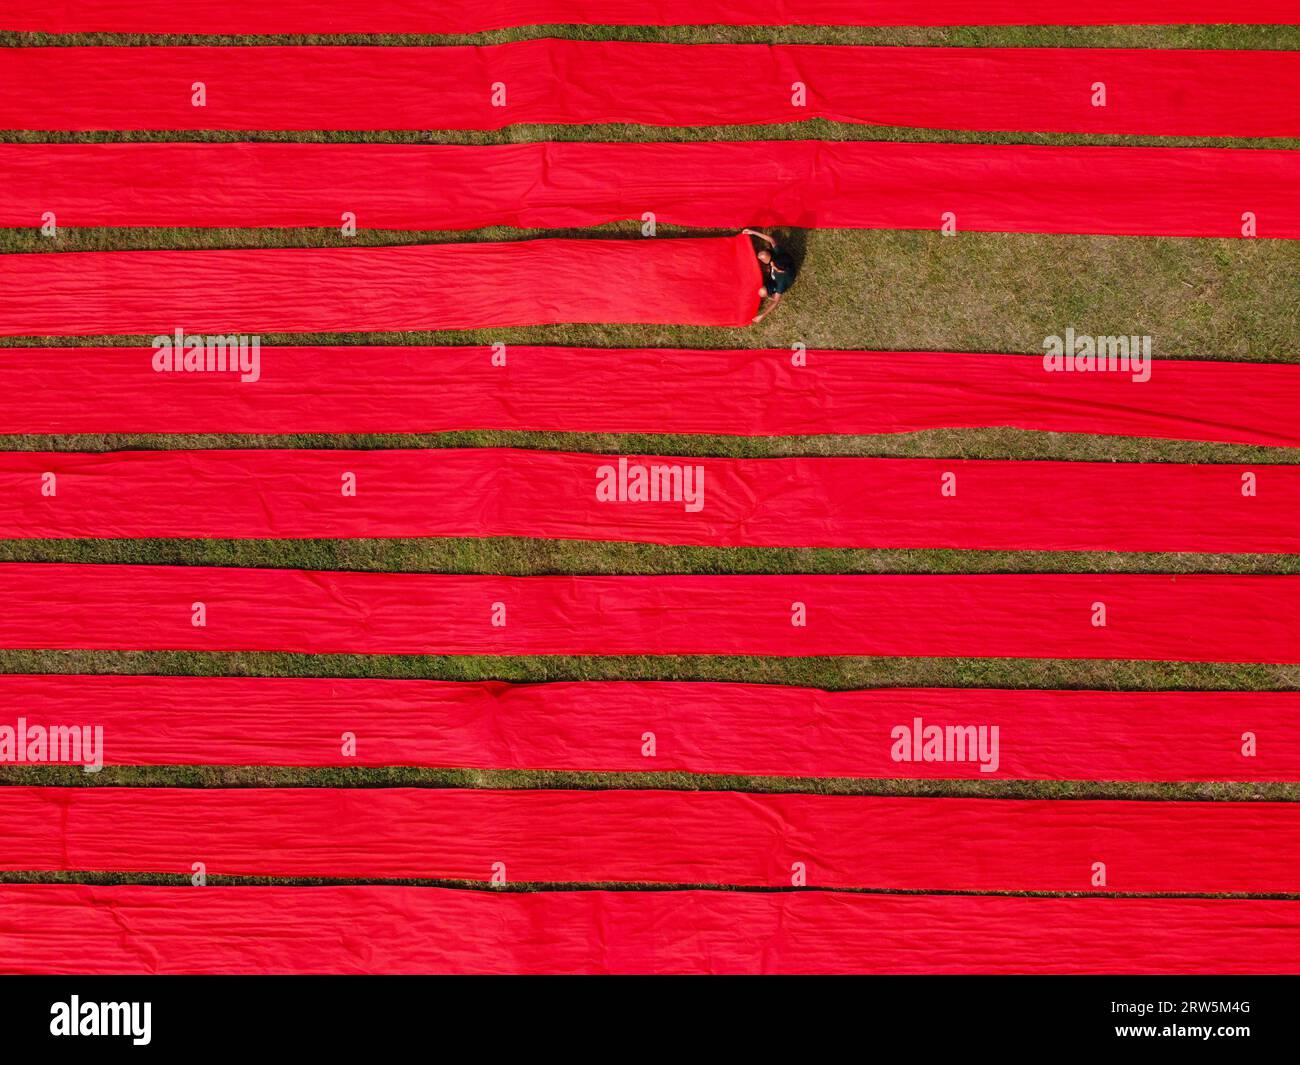 Narsingdi, Bangladesch. September 2023. Hunderte Meter leuchtend roter Stoffe sind in ordentlichen Reihen auf einem Feld in Narsingdi, Bangladesch, angeordnet. Die langen roten Tücher, die bei den Einheimischen als „Lal Shalu“ bezeichnet werden, trocknen unter der heißen Sonne, nachdem sie mit leuchtend roter Farbe gefärbt wurden. Die Verwendung von Sonnenlicht zum Trocknen der Stoffe senkt die Produktionskosten, da sie billiger und nachhaltiger ist. Die umweltfreundliche Trocknungsmethode erstreckt sich über eine Fläche von 5 Fußballfeldern und dauert bis zu 6 Stunden, nachdem sie von den Arbeitern bei Sonnenaufgang platziert wurde. Joy Saha/Alamy Live News Stockfoto